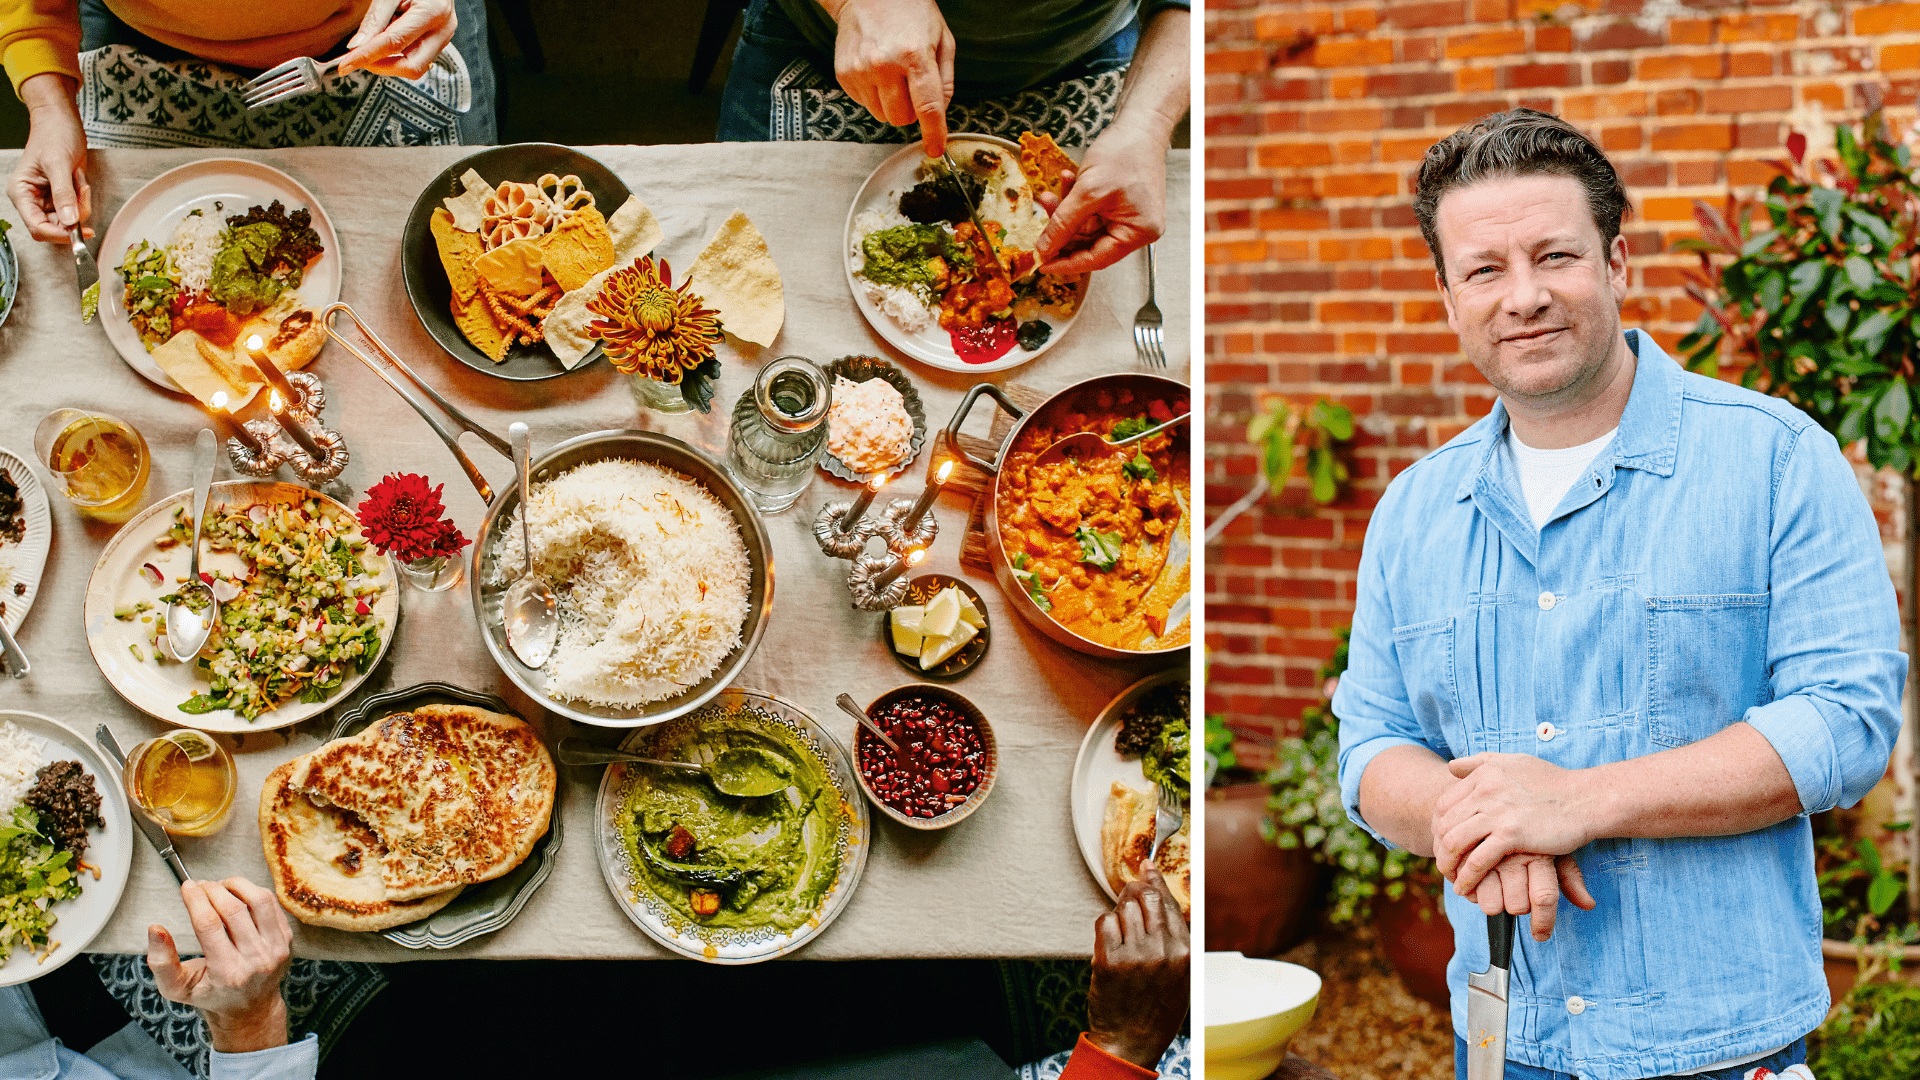 Jamie Oliver: At være sammen føles vigtigere i år end nogensinde før